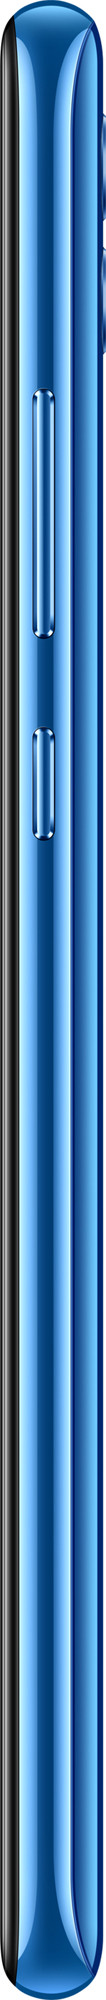 Смартфон Honor 10 Lite 3/128GB Синий